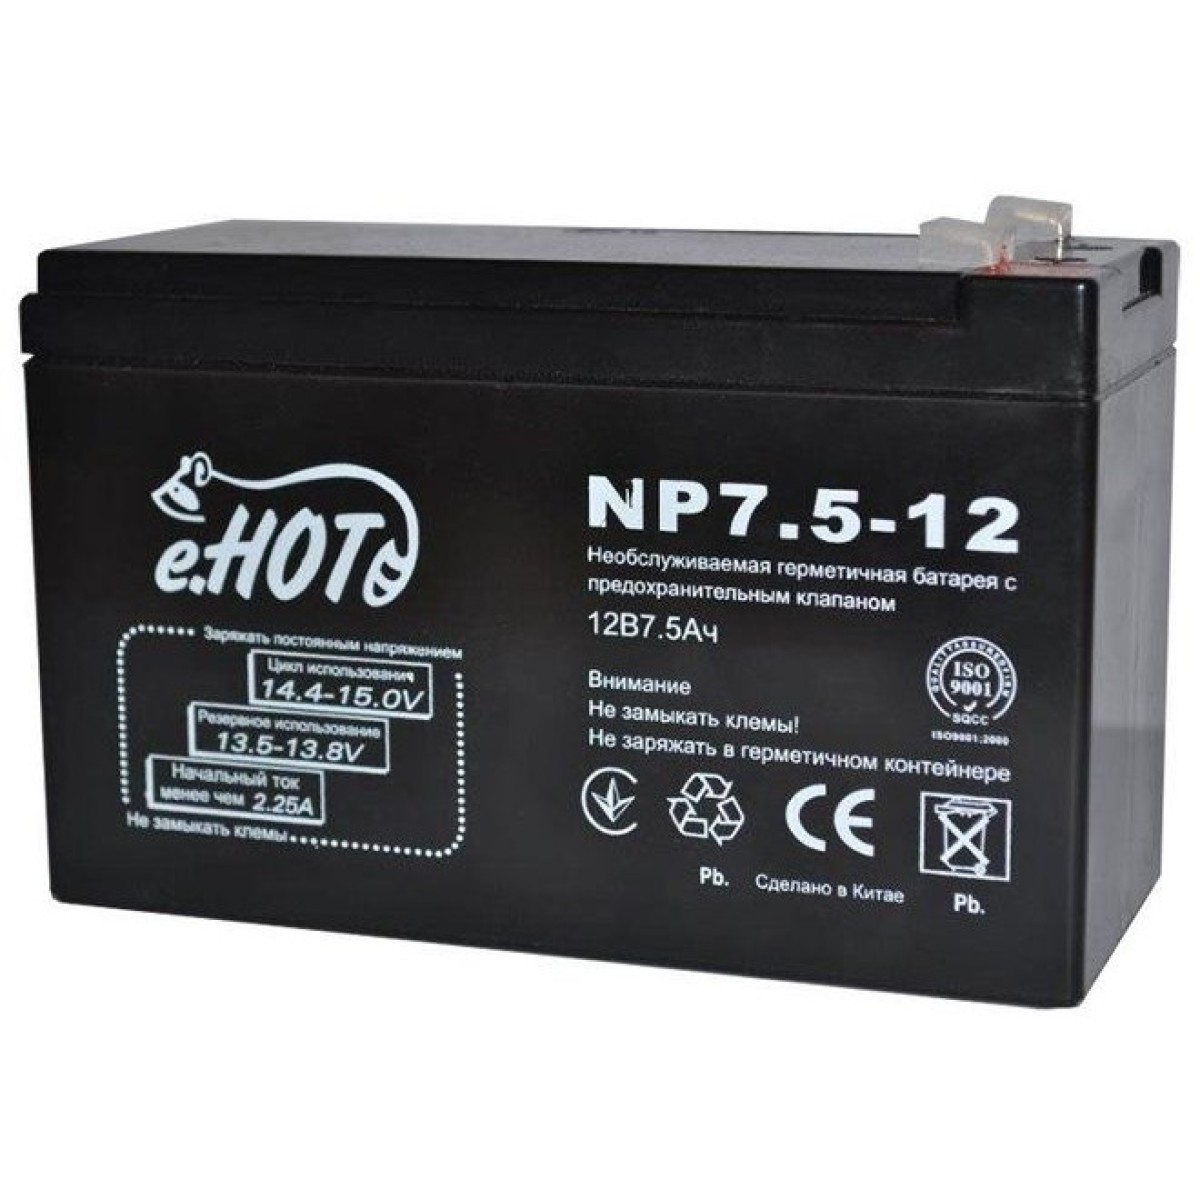 Акумуляторна батарея Enot NP7.5-12 12V 7.5Ah (EnotNP7.5-12) 256_256.jpg